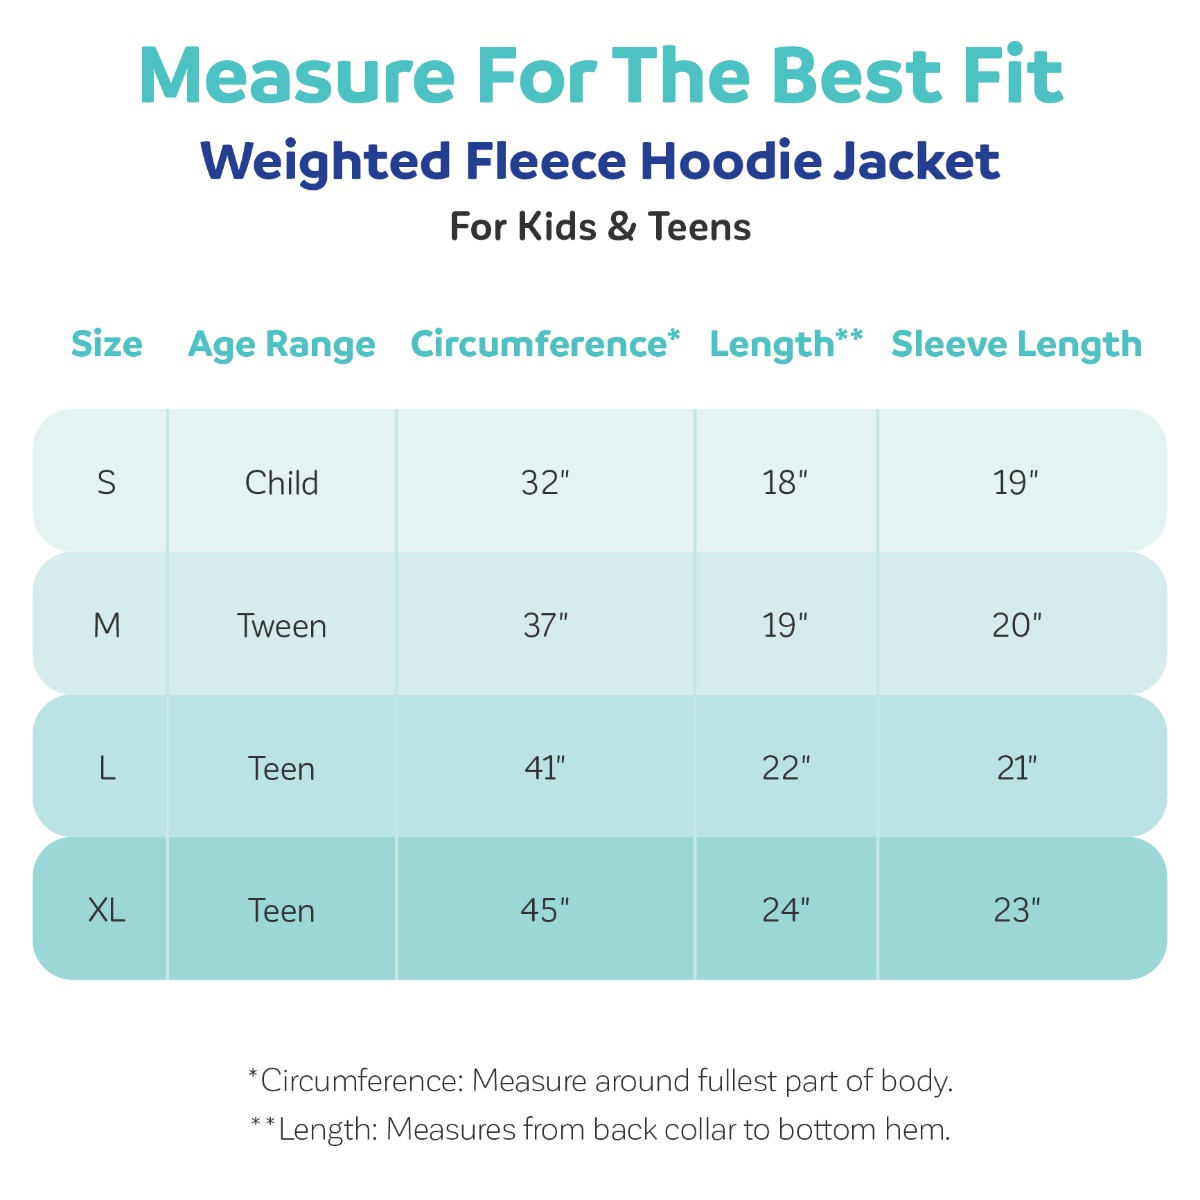 Weighted_Fleece_Hoodie_Jacket_Size_Chart_2